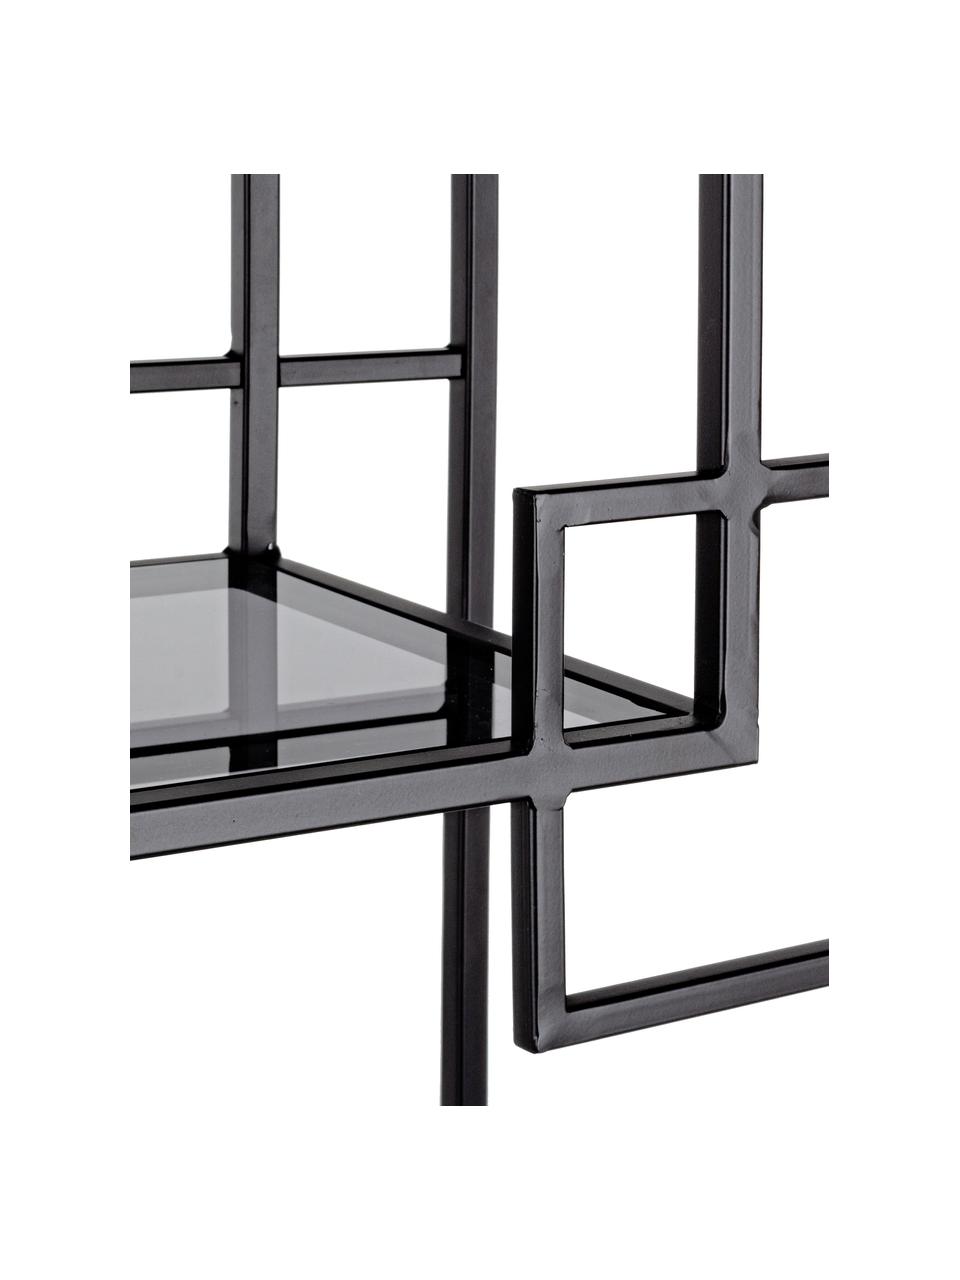 Metalen wandrek Korvet in zwart met glazen platen, Frame: metaal, epoxy en gepoeder, Zwart, grijs, transparant, 71 x 183 cm